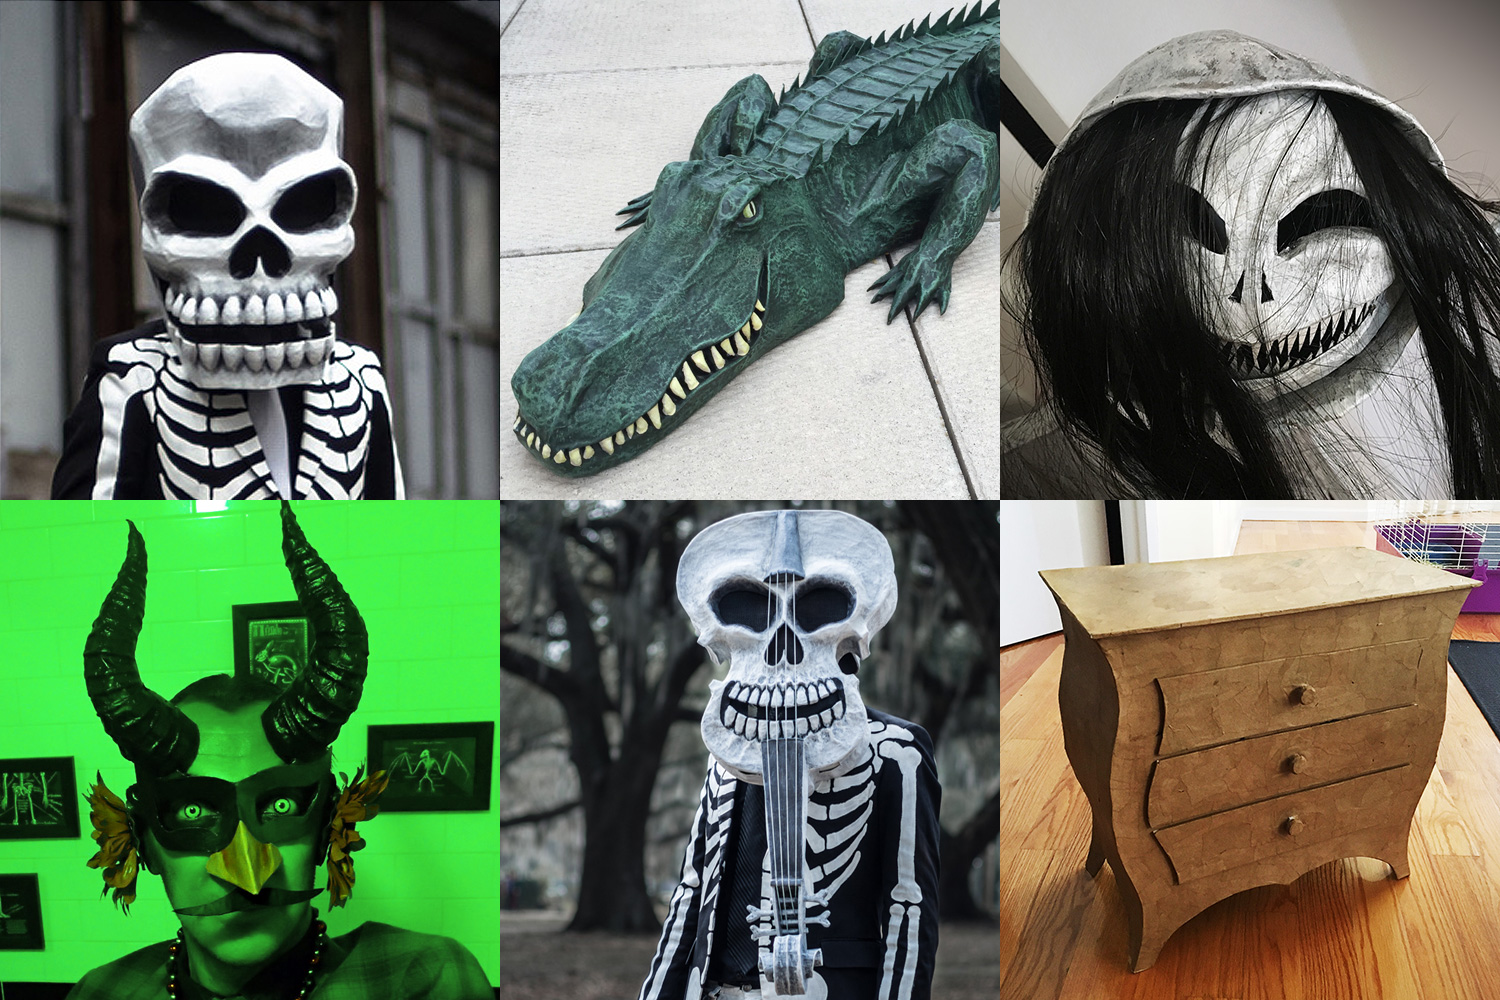 Custom papier-mache masks and sculptures